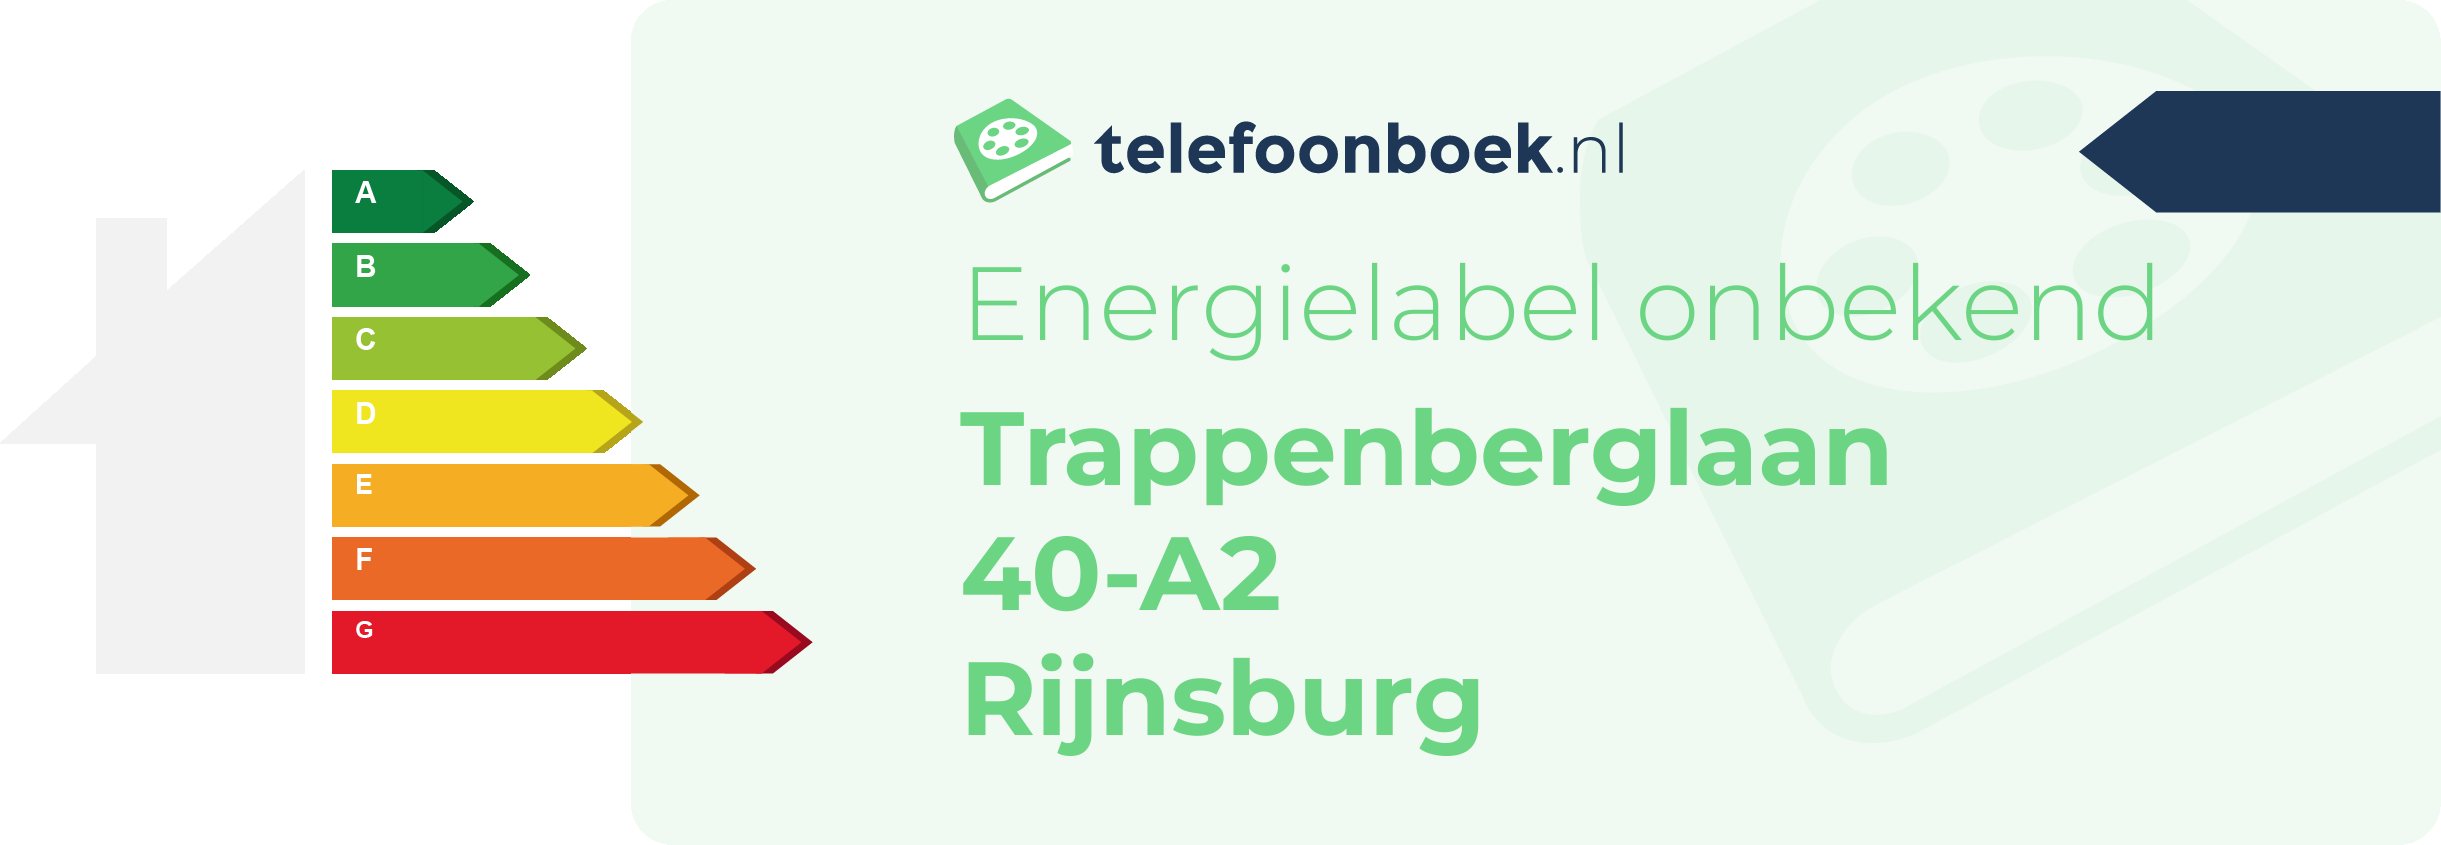 Energielabel Trappenberglaan 40-A2 Rijnsburg